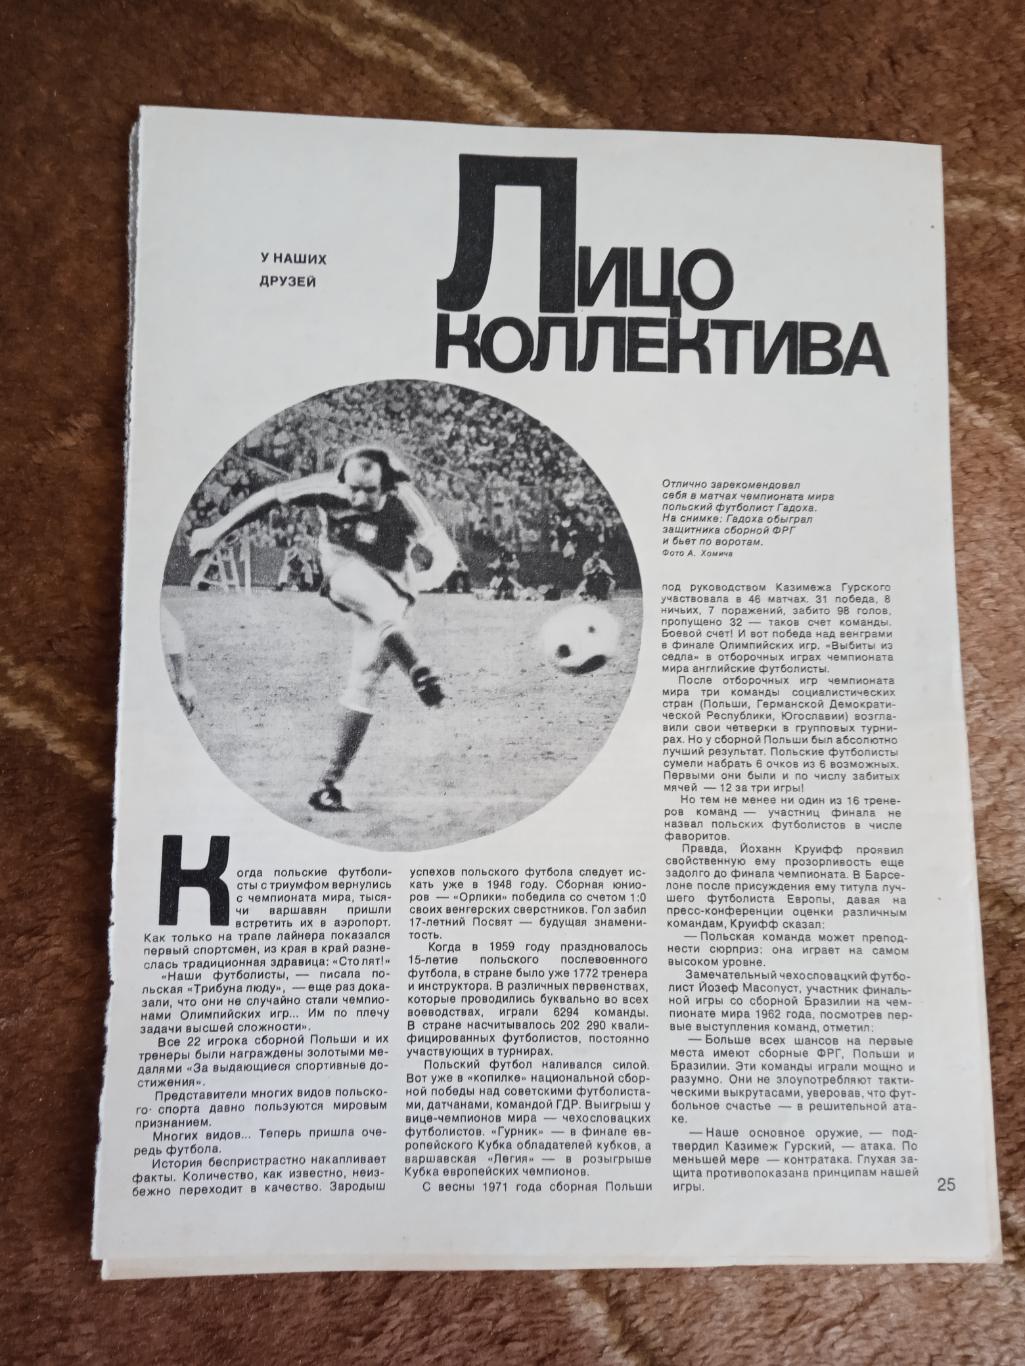 Статья.Фото.Футбол.Чемпионат мира 1974.ФРГ.Журнал Спортивные игры 1974.